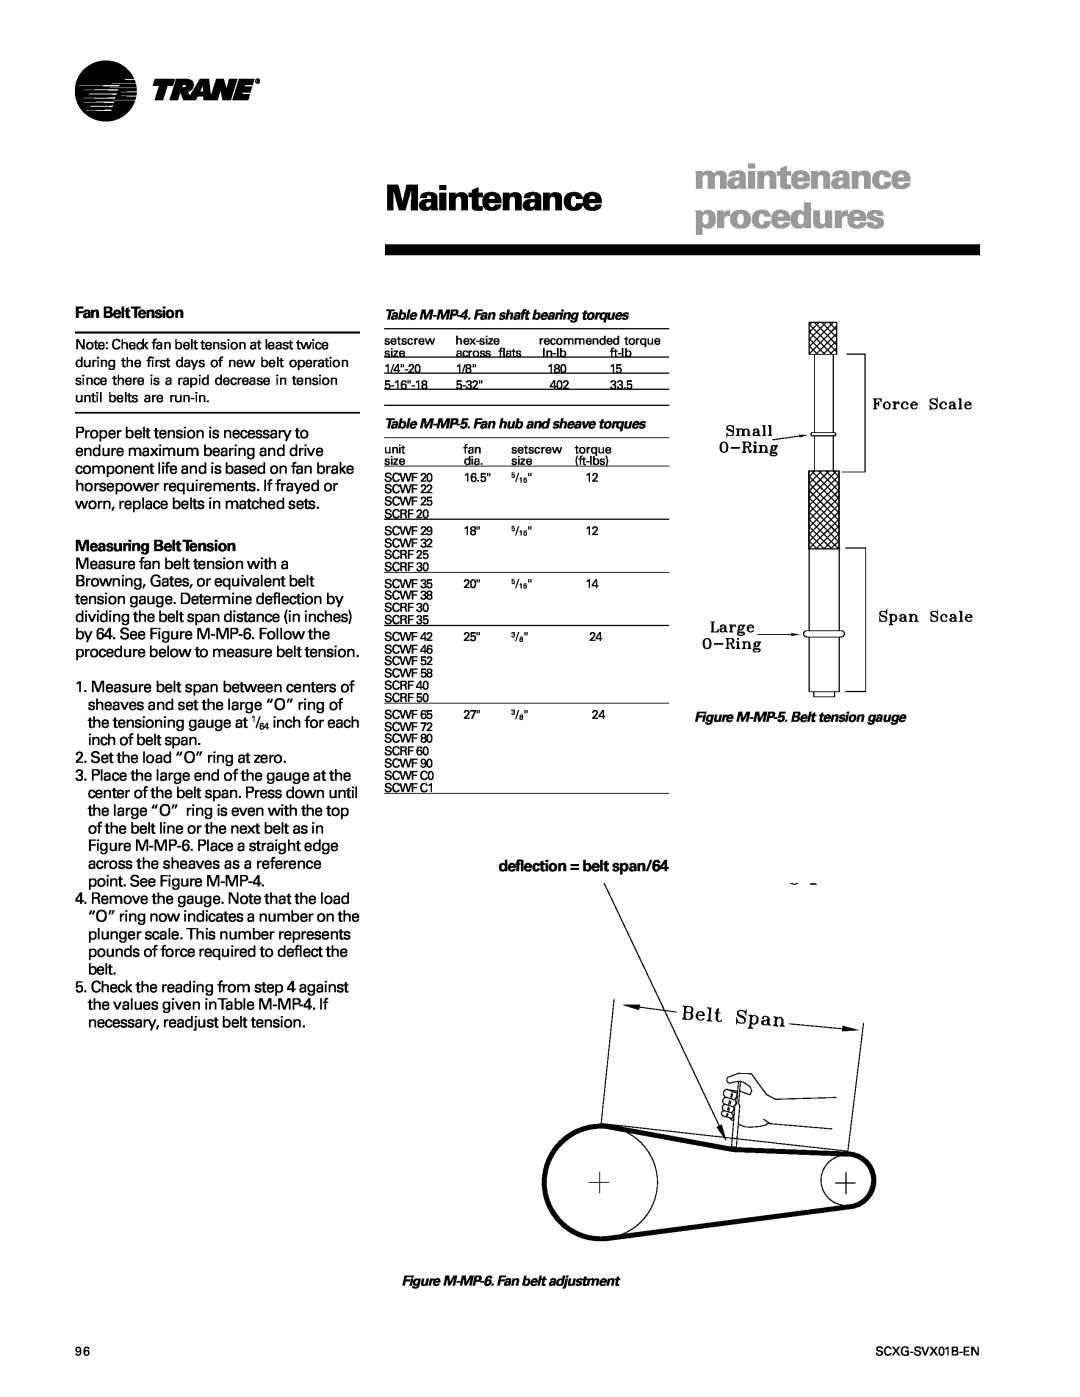 Trane SCXG-SVX01B-EN manual maintenance, Maintenance procedures, Fan BeltTension, deflection = belt span/64 